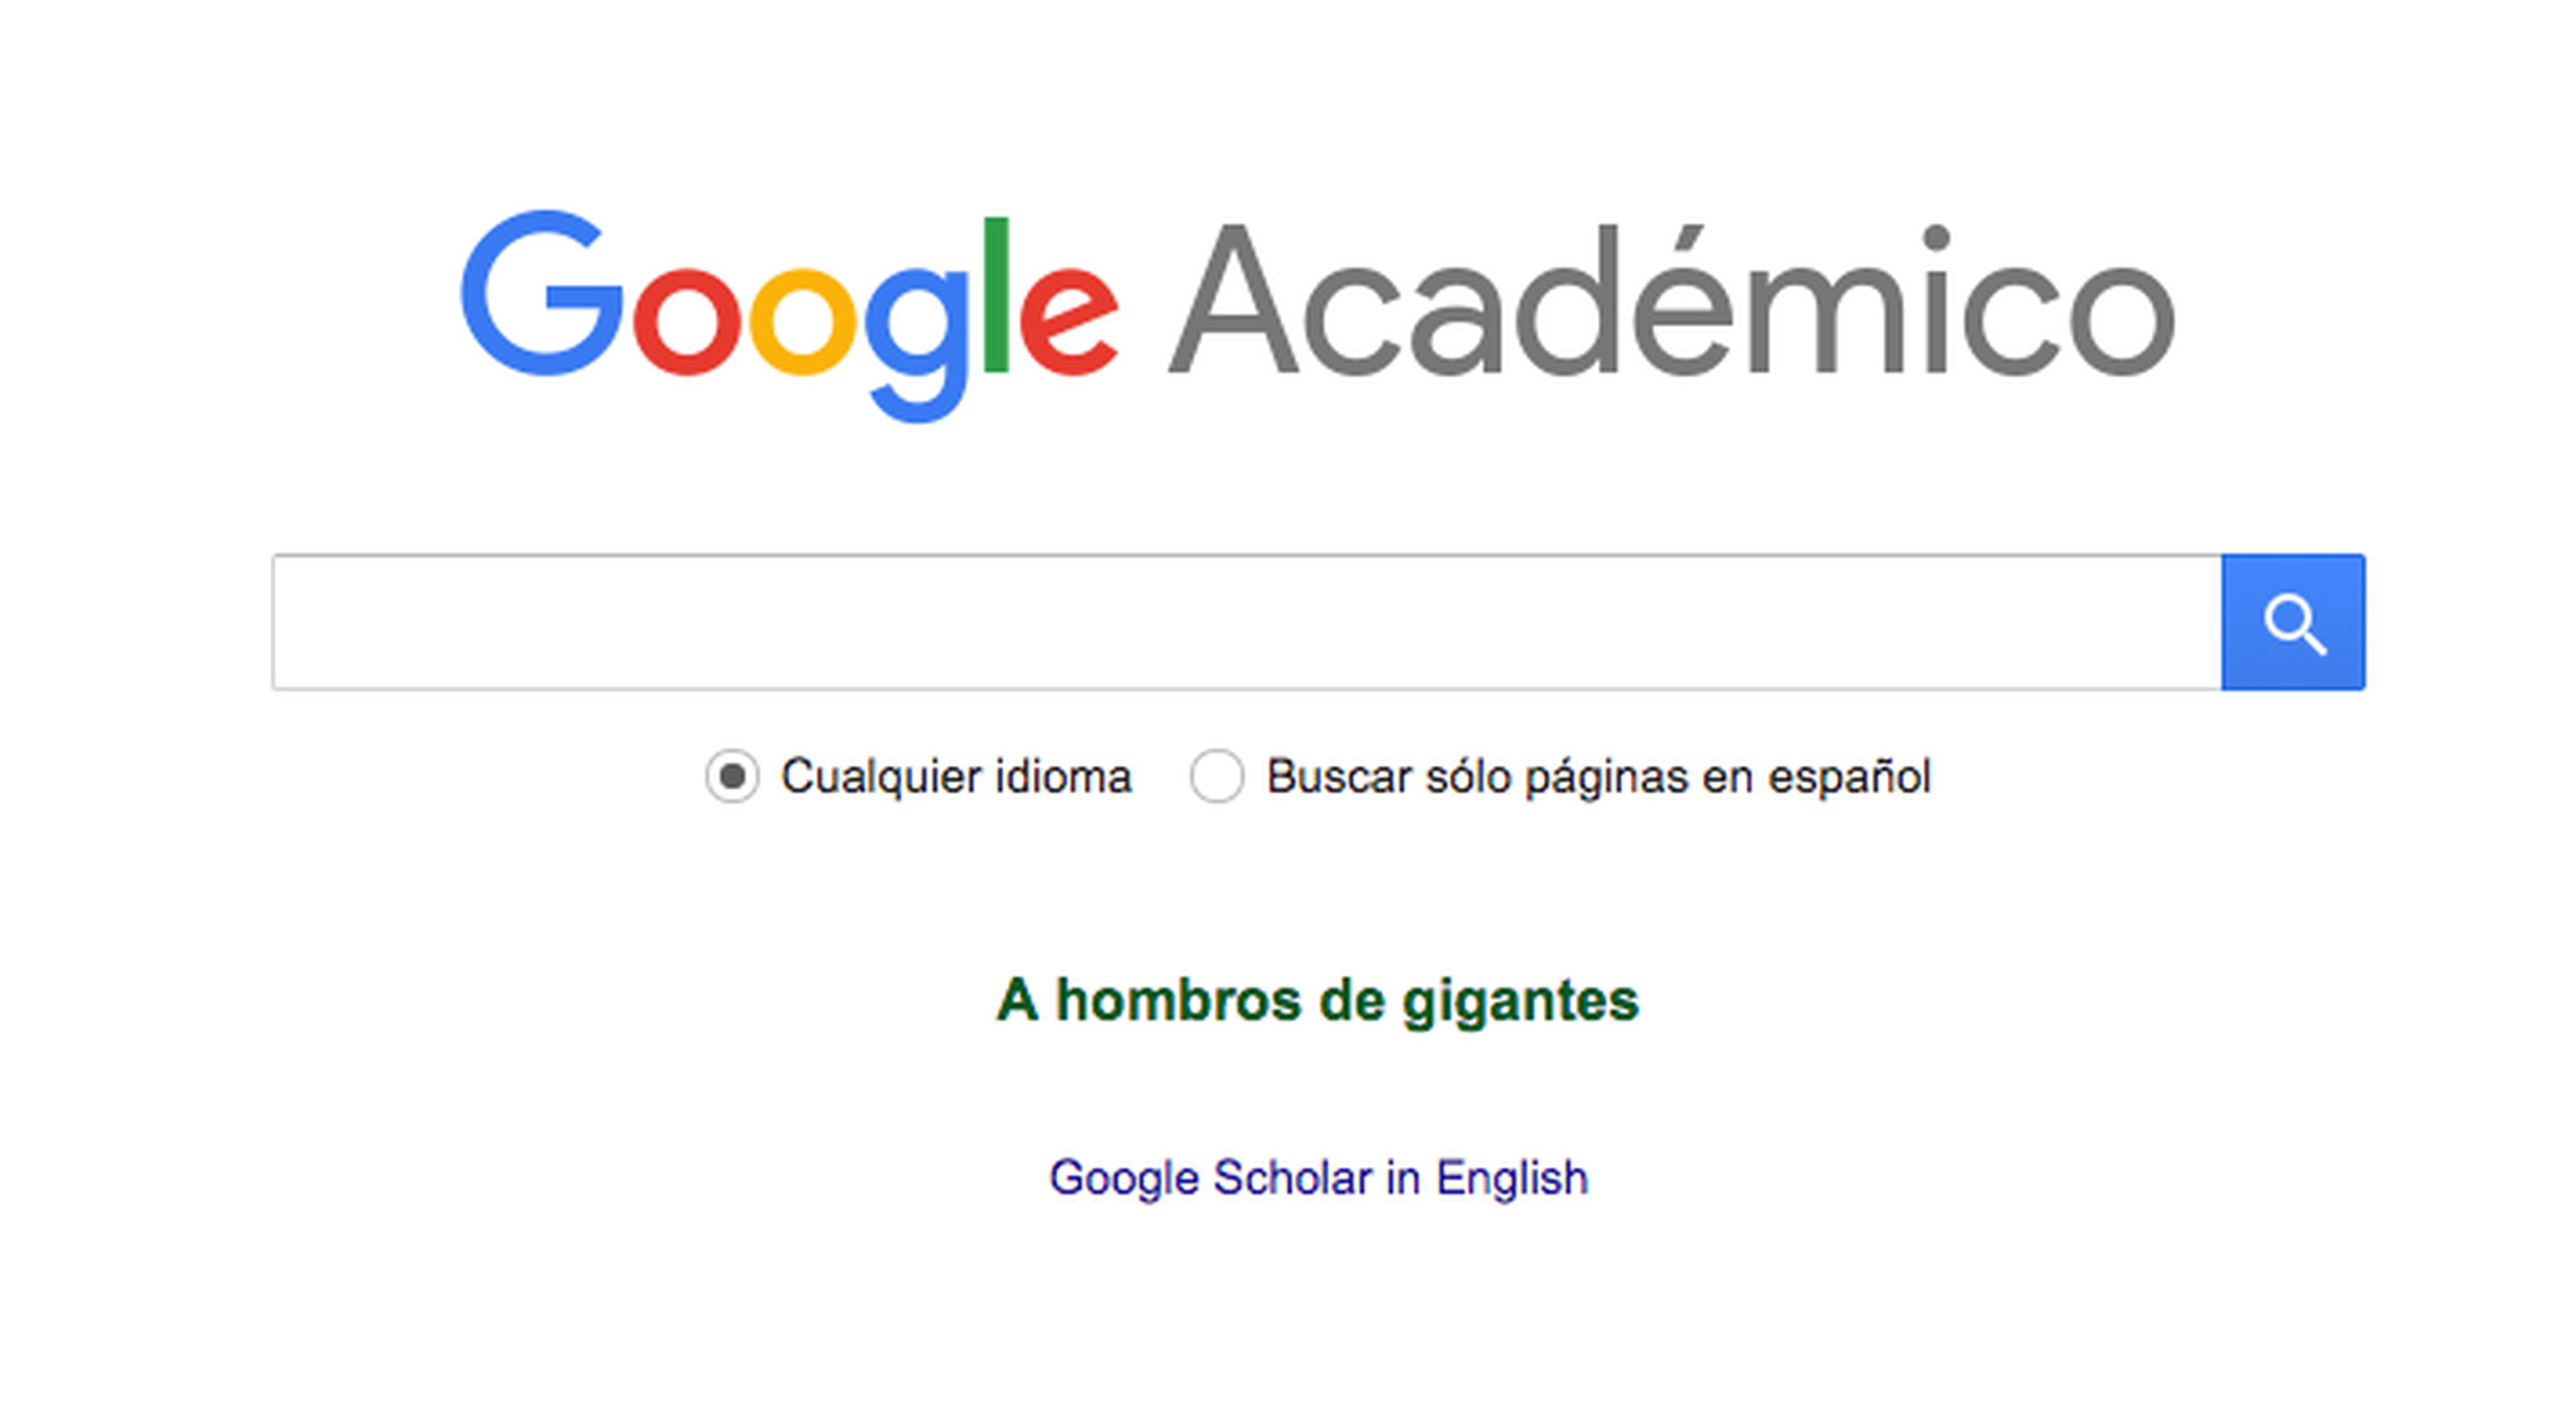 Google académico o científico